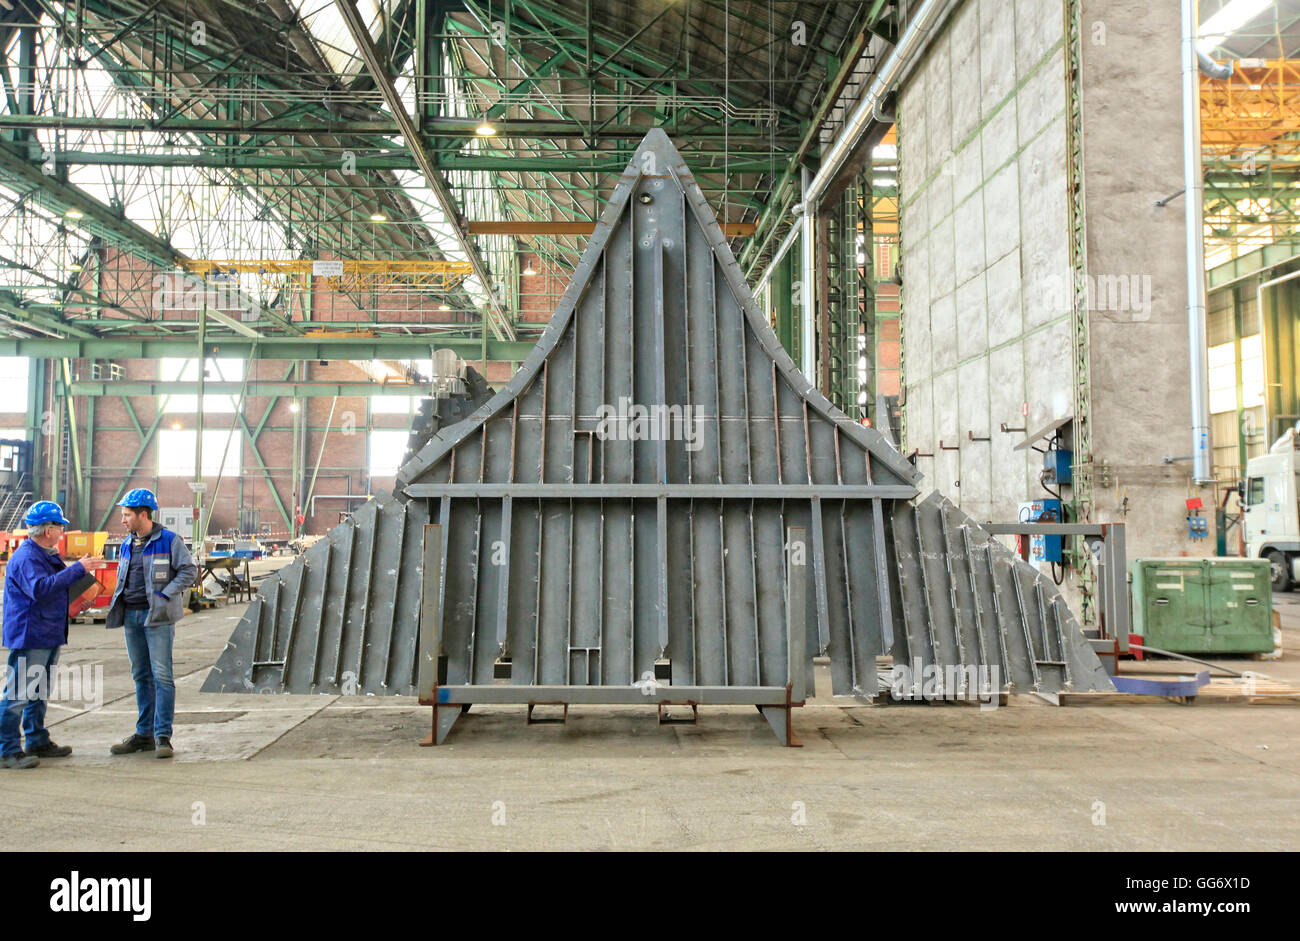 CMN, Constructions mecaniques de Normandie, une entreprise privée de chantier naval situé à Cherbourg, en France, emploie environ 375 personnes. Banque D'Images